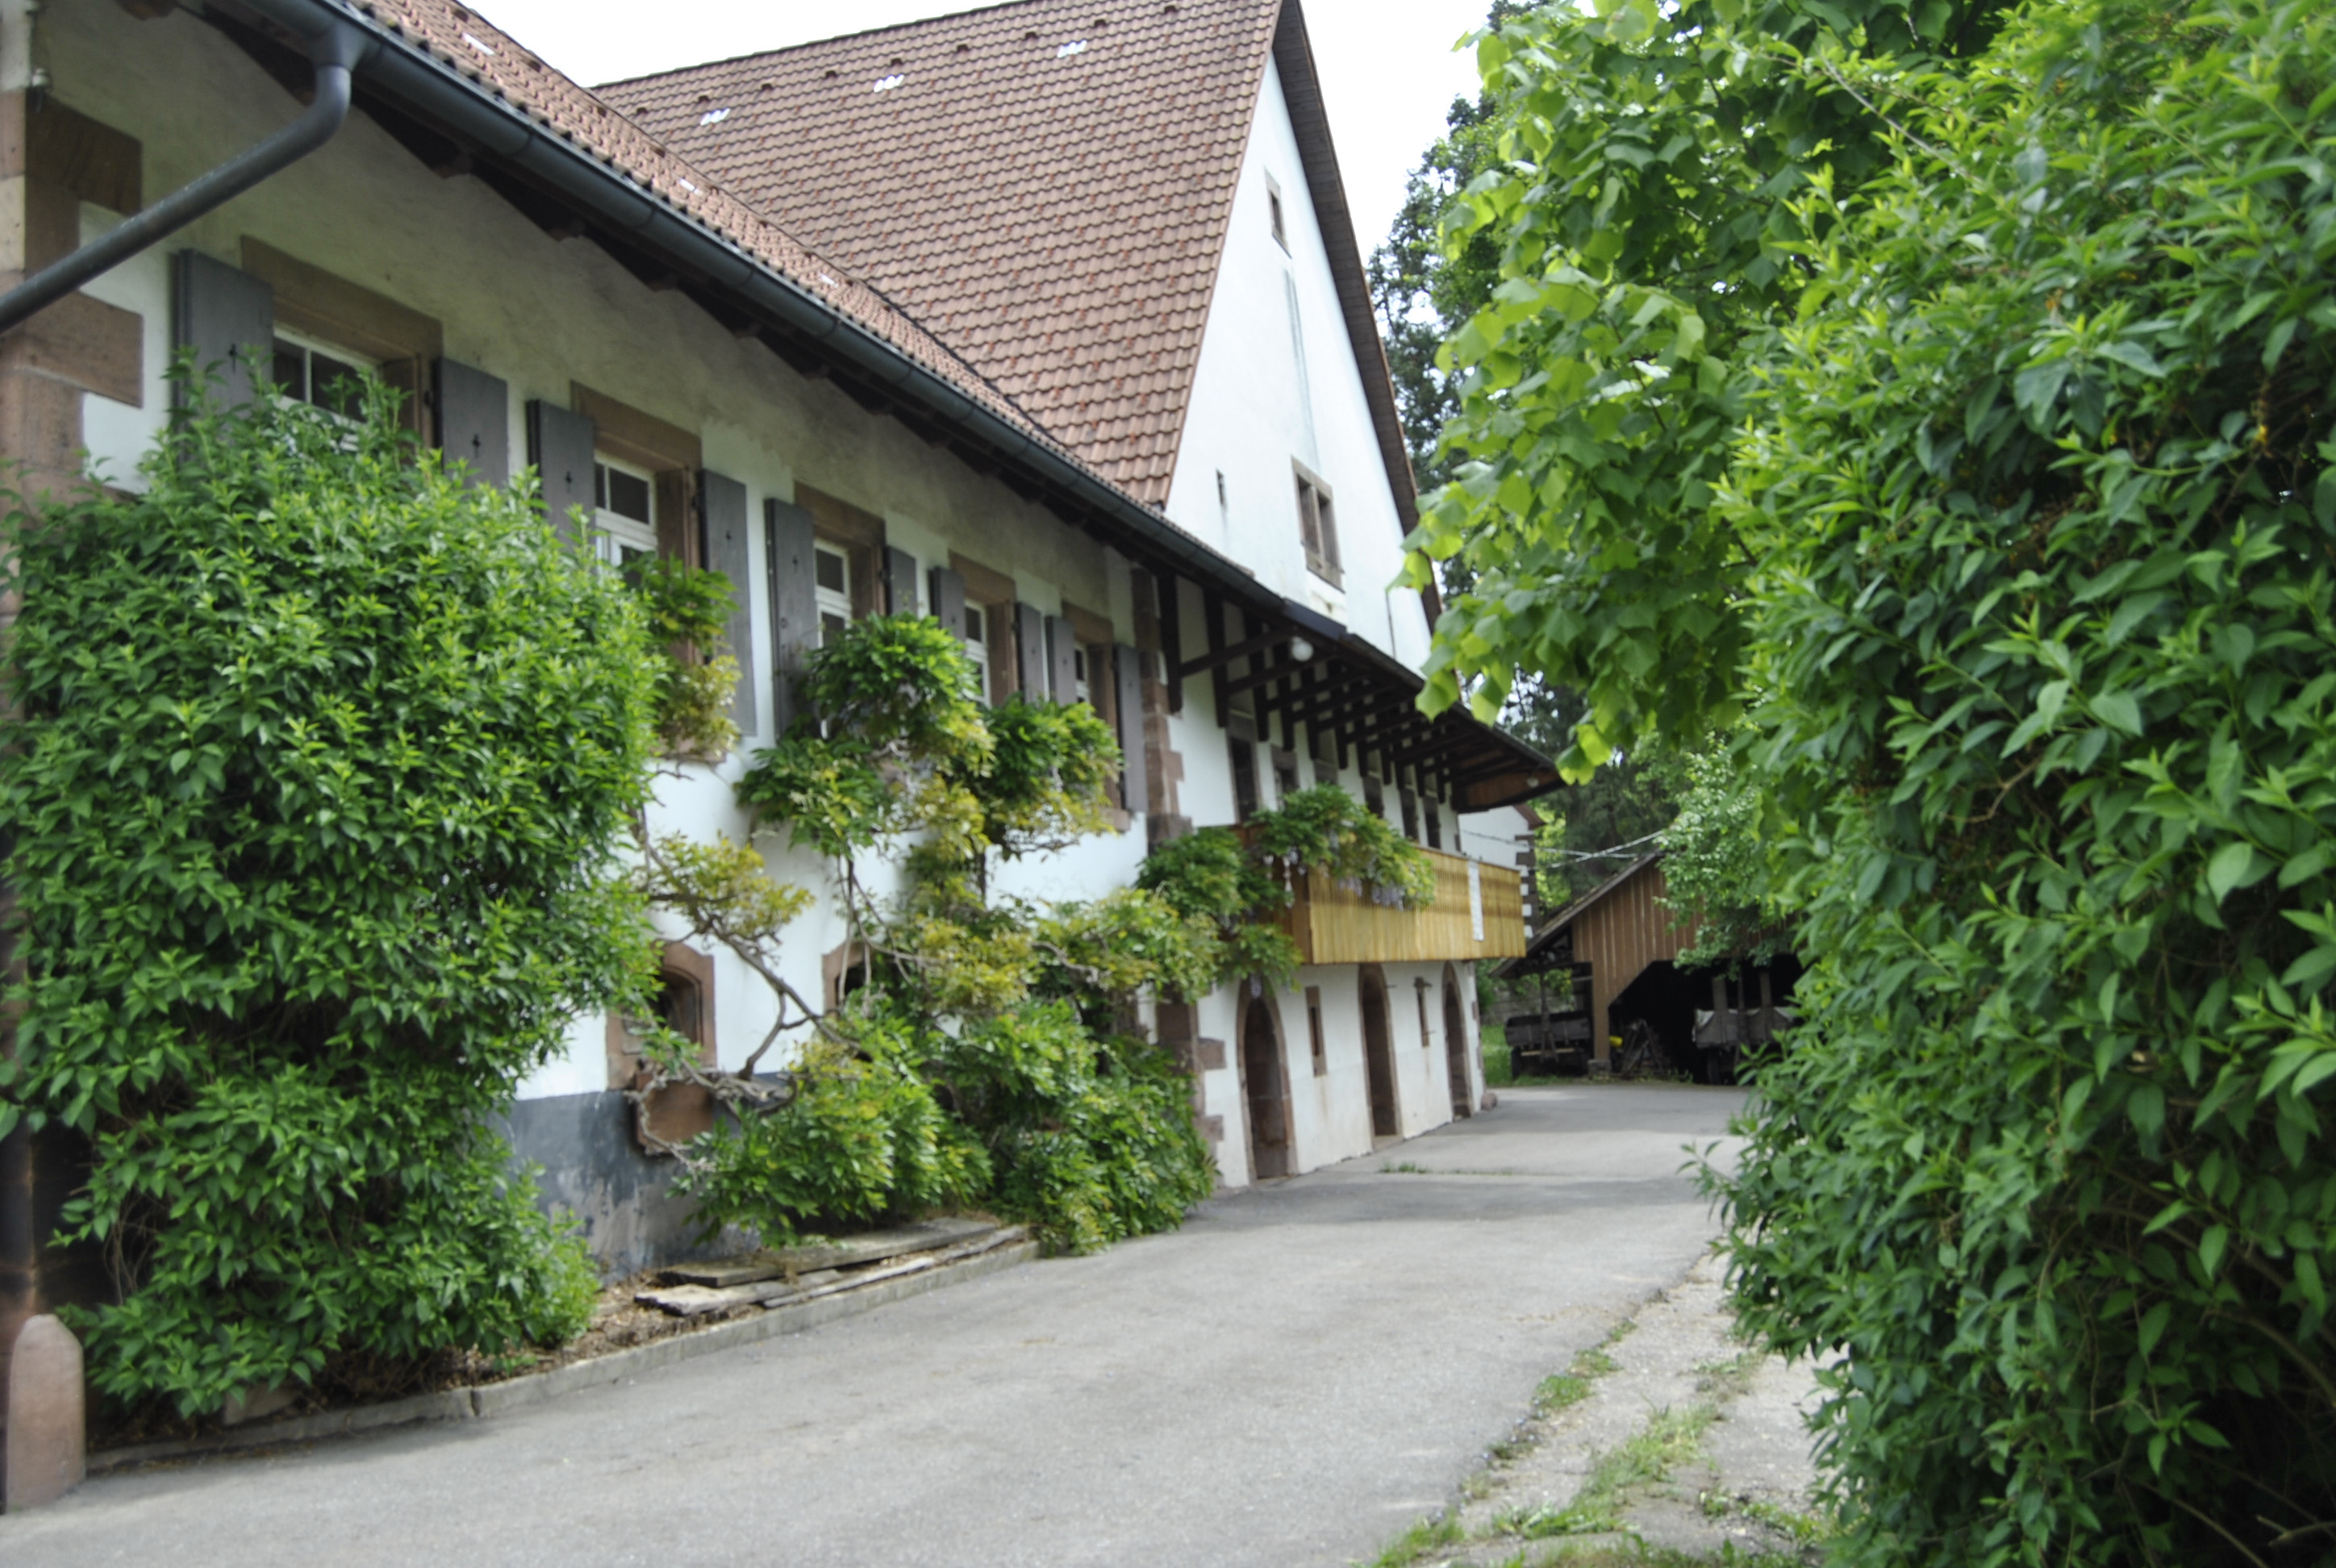 Die Gaststätte "Vogt auf Mühlstein" befindet sich auf einem idyllischen Hochplateau. / Urheber: Gemeinde Nordrach, © Gemeinde Nordrach